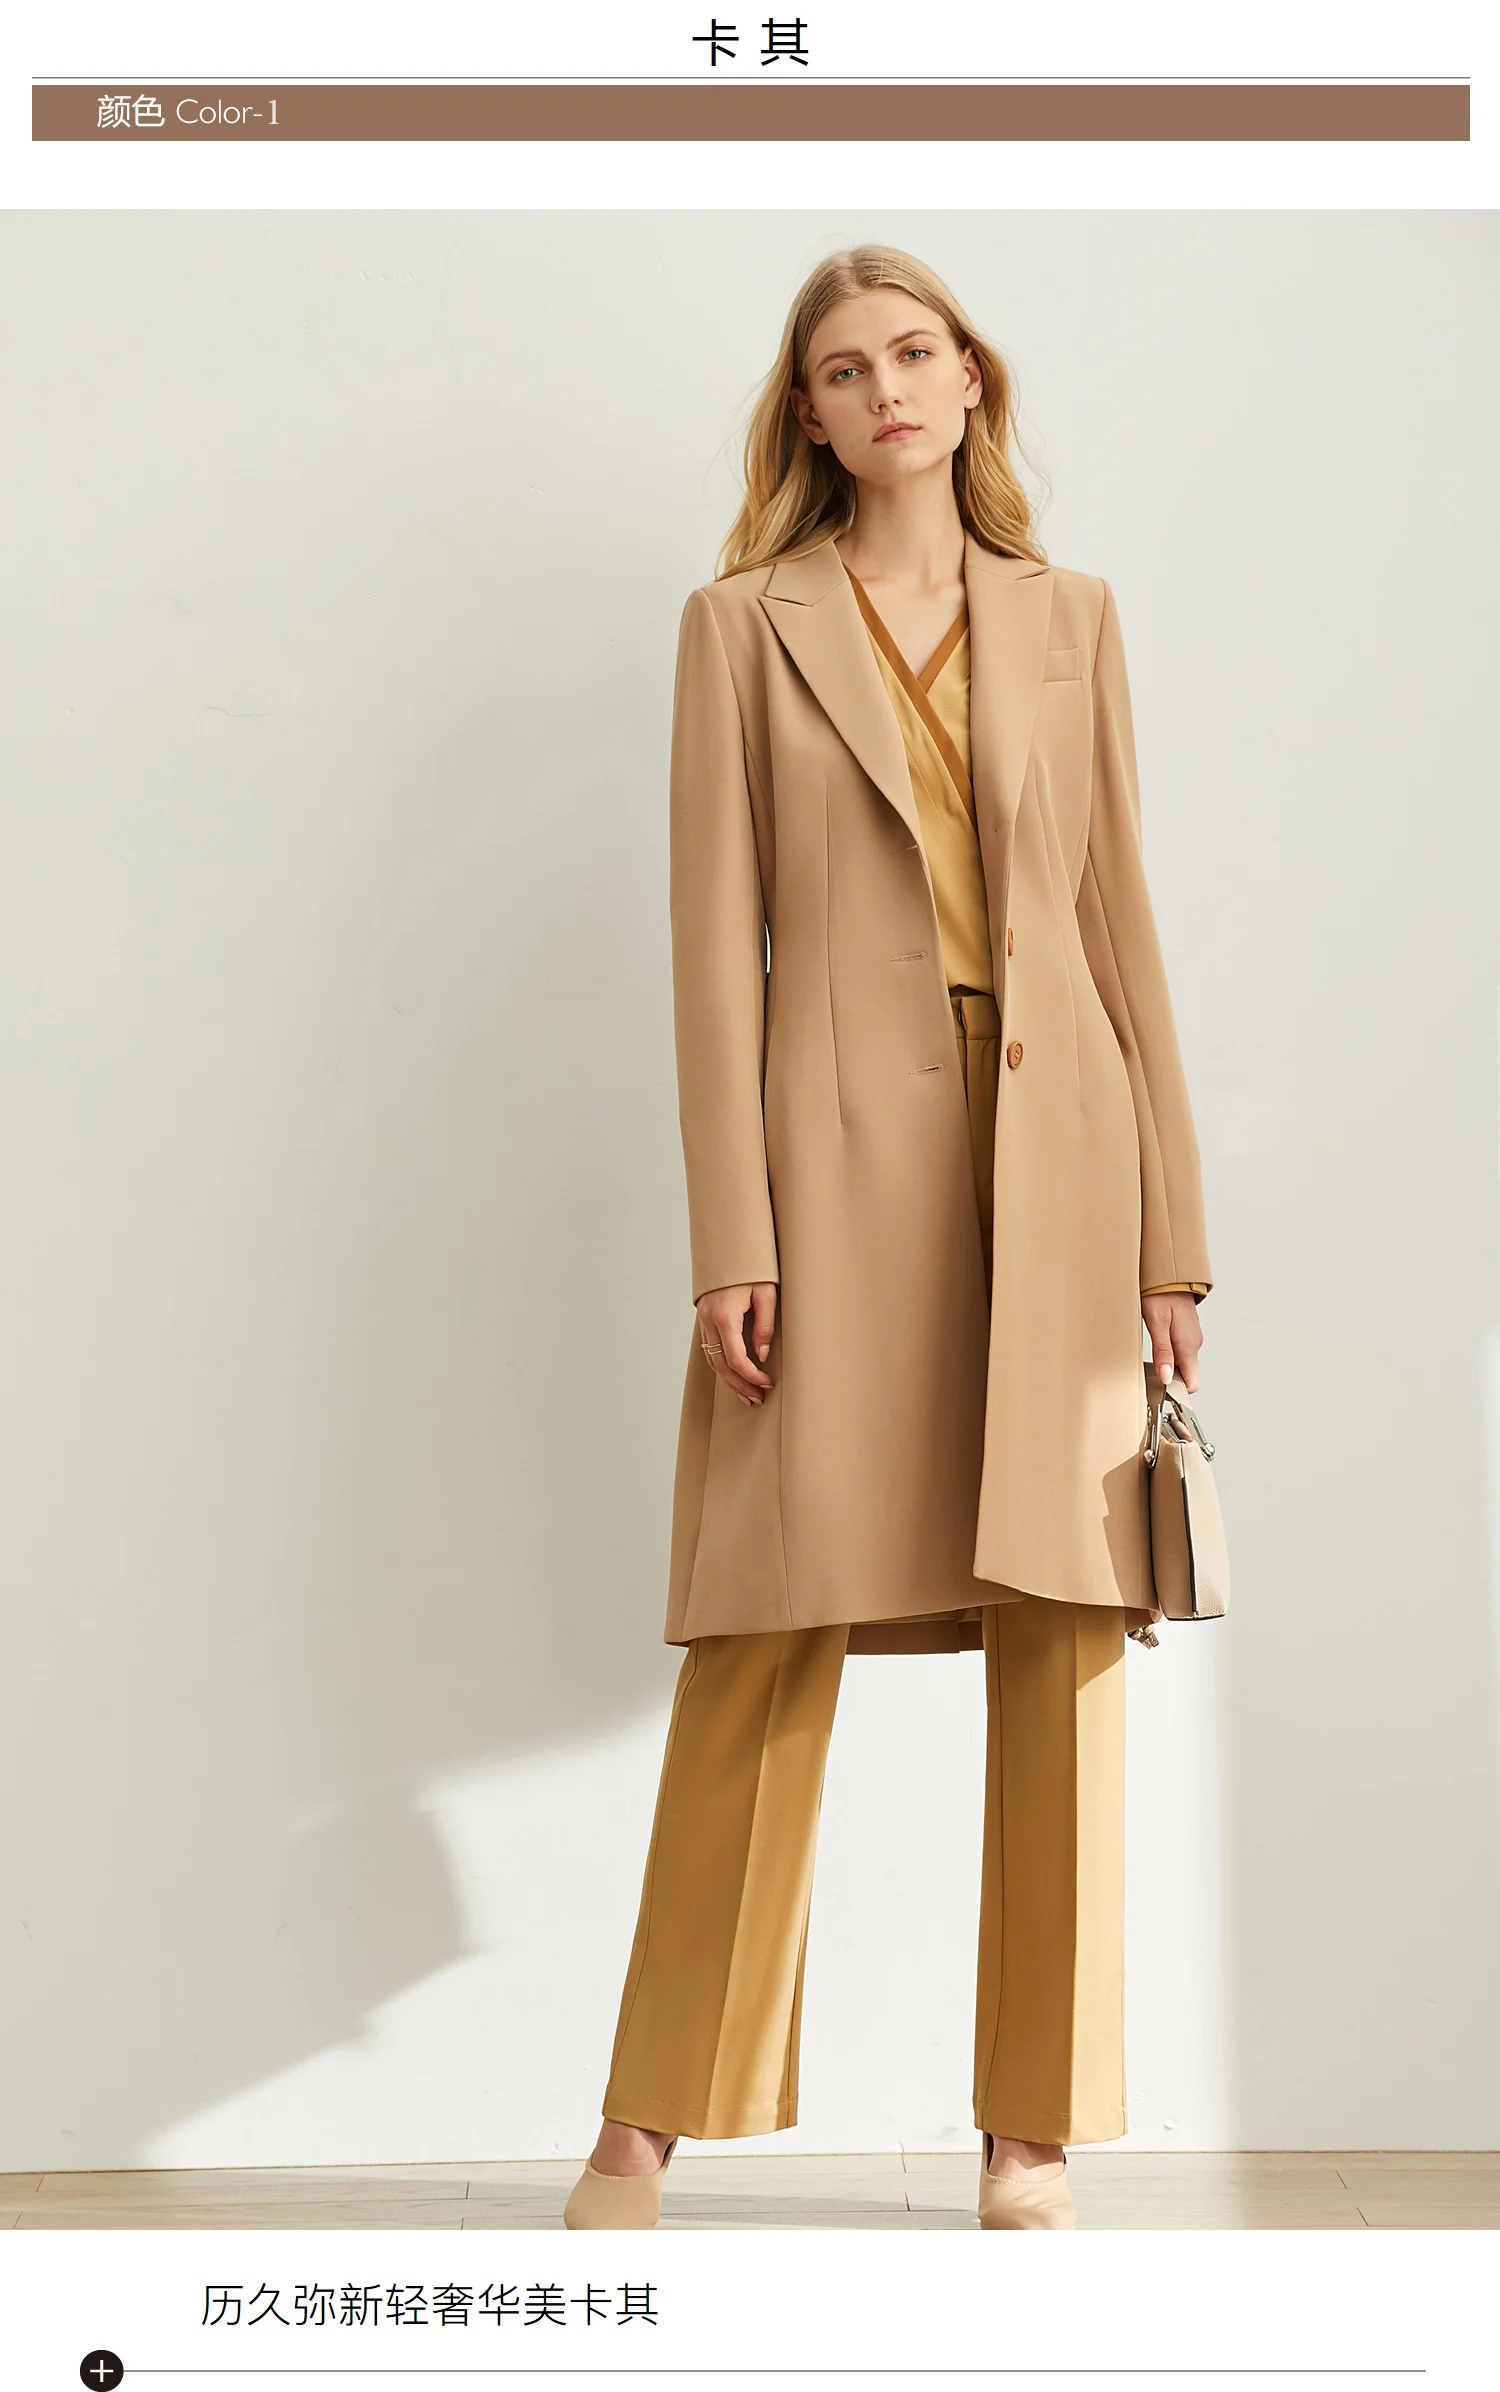 Ami's Минималистичная мода, высококачественный костюм, осень новая стройная фигура-лестный отворот, длинное пальто